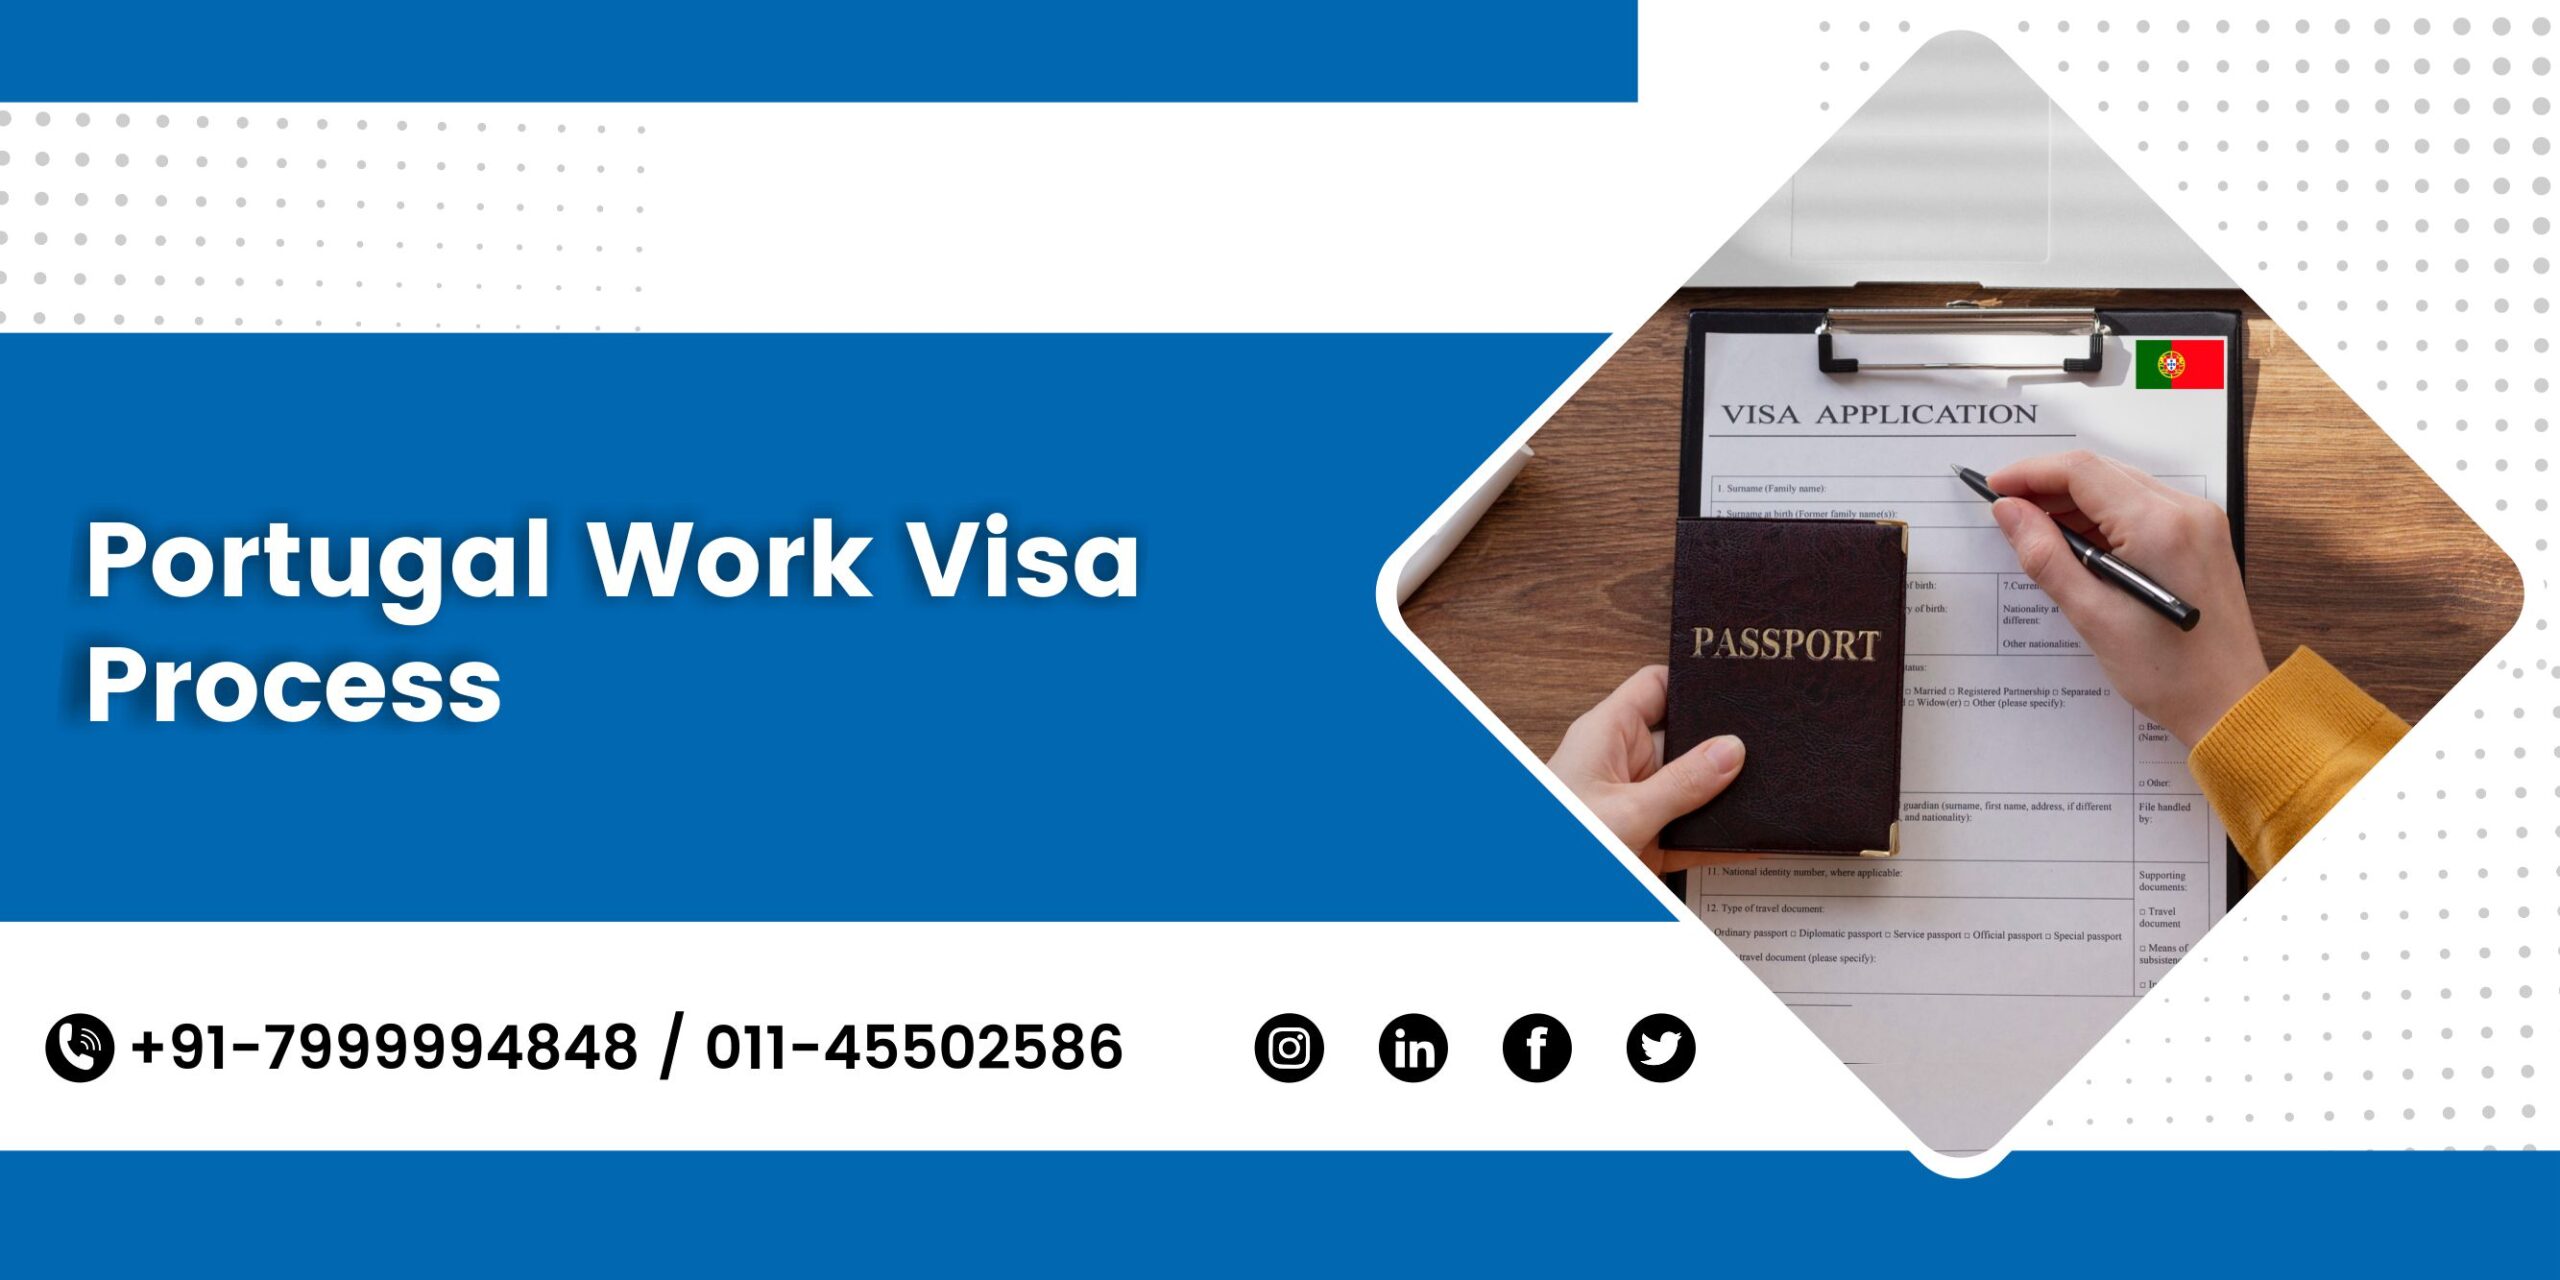 Portugal work visa process